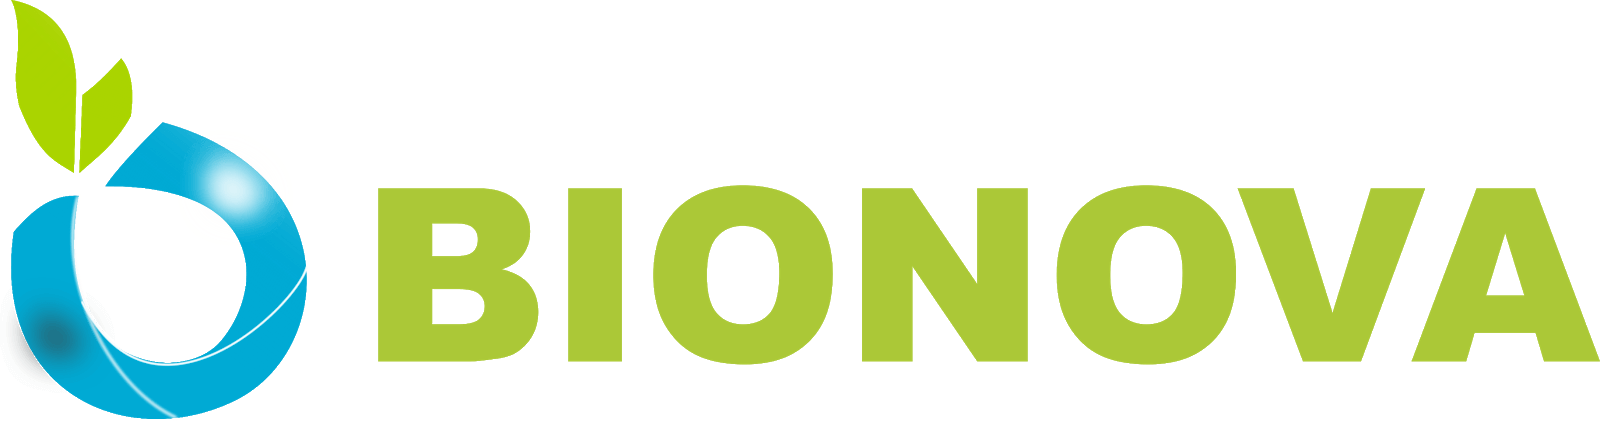 Bionova - Ecosystem partner for InnovatioCuris